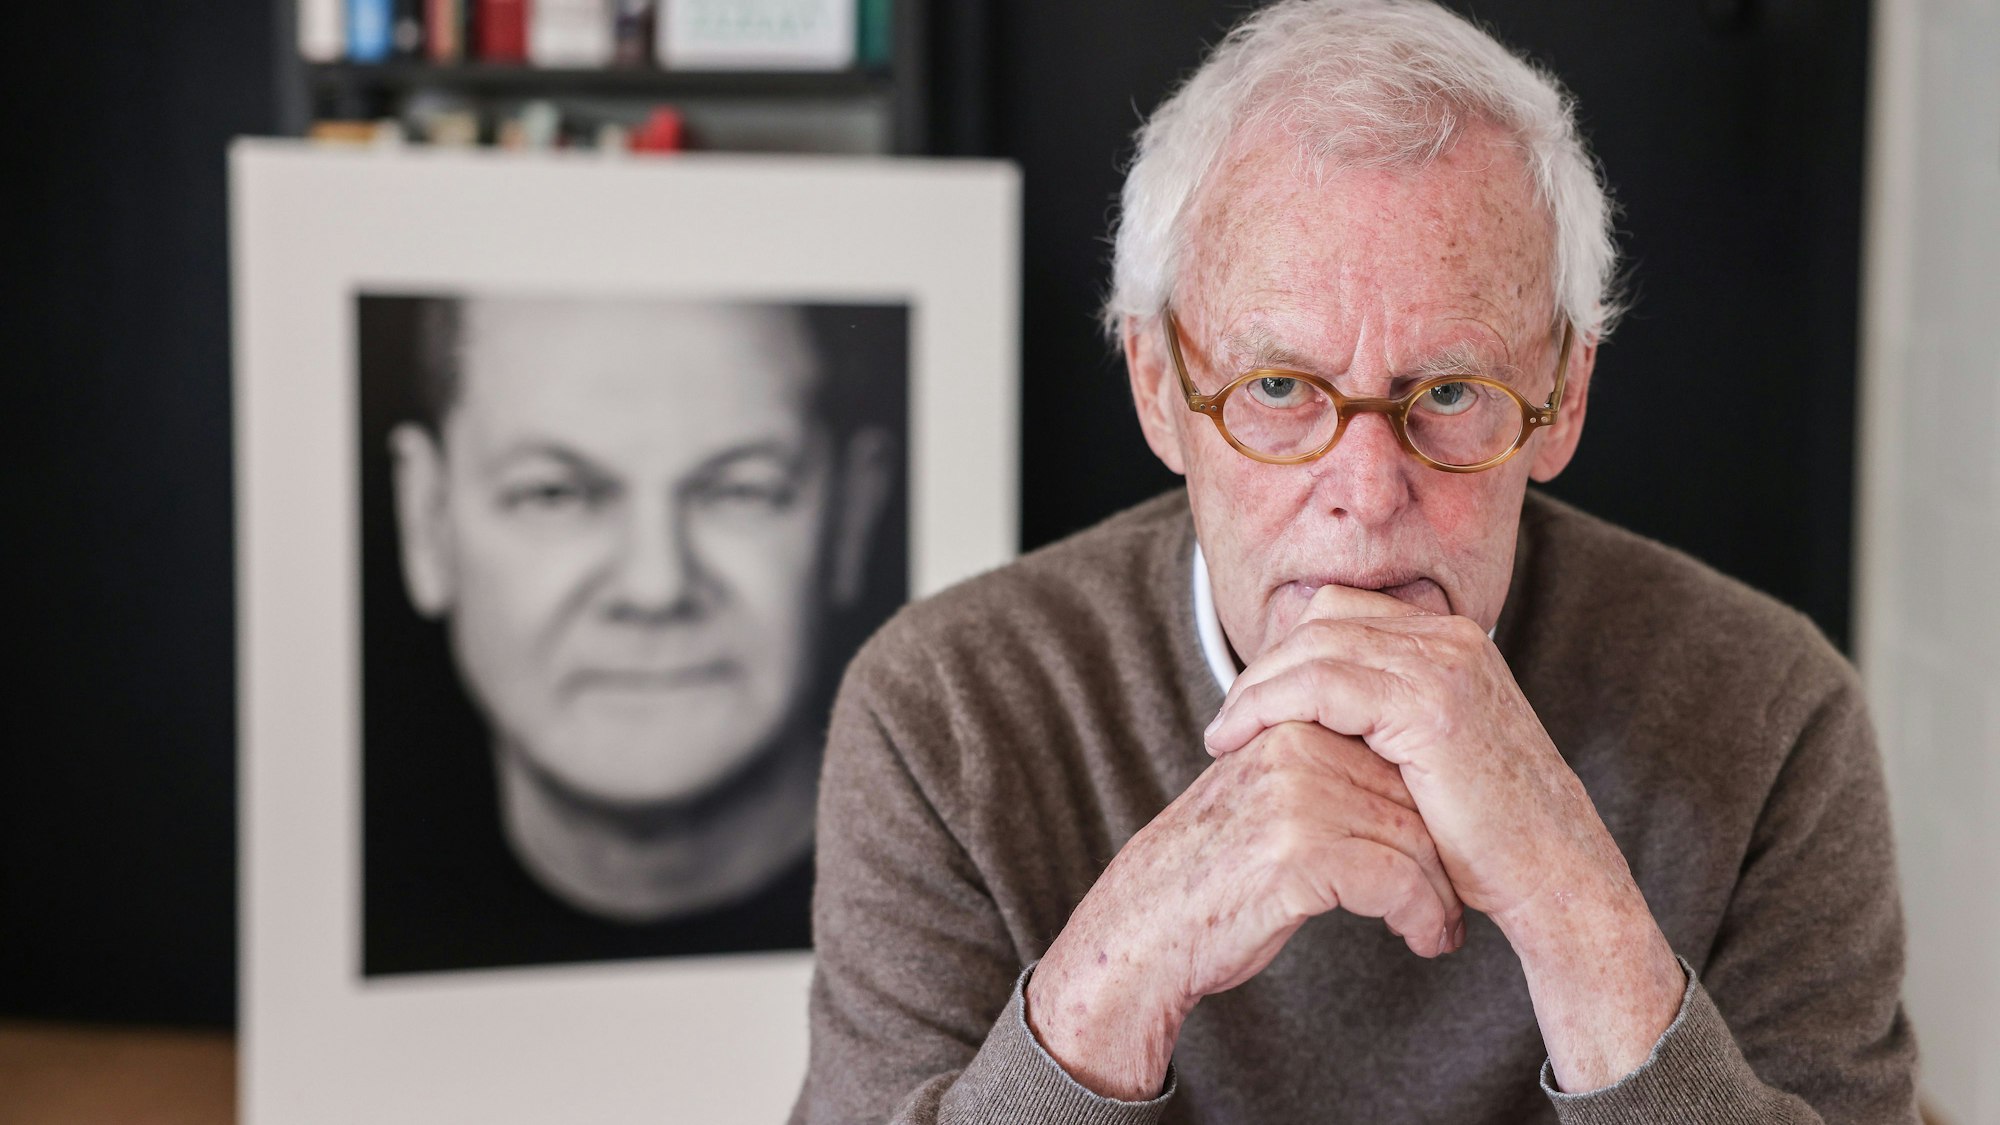 Der Porträtfotograf Konrad Rufus Müller sitzt in seinem Wohnzimmer vor einem Schwarz-Weiß-Porträt von Bundeskanzler Scholz